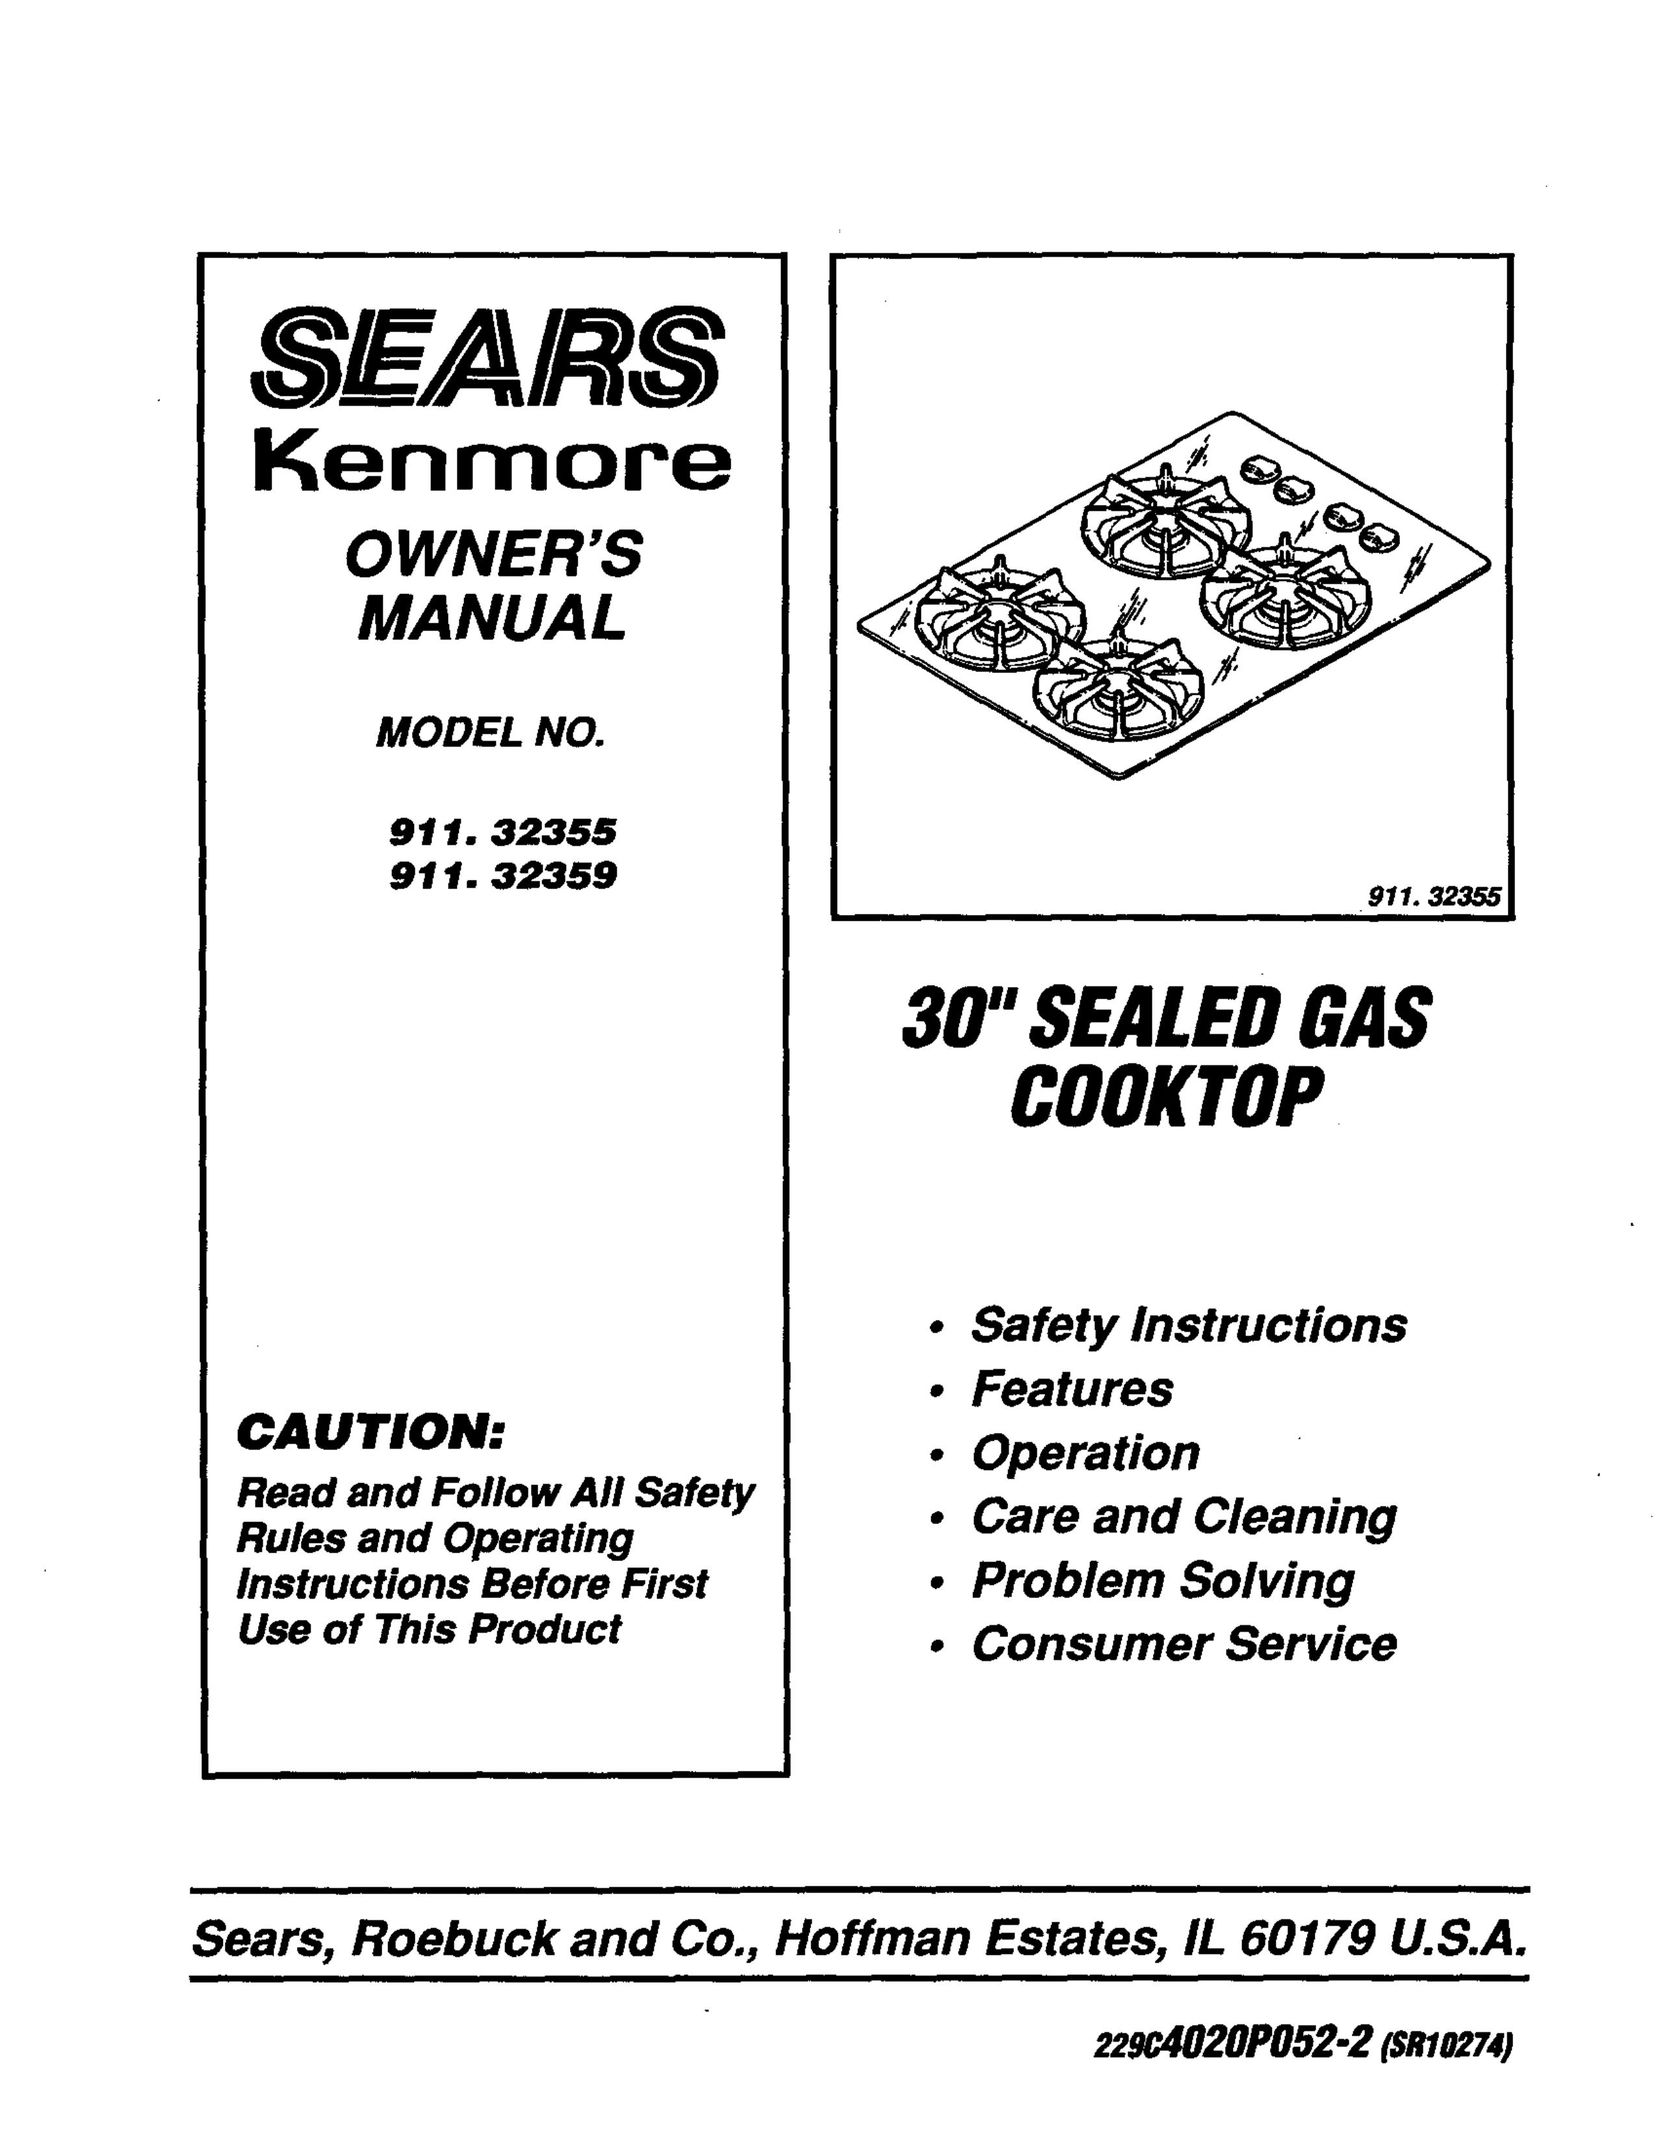 Sears 911.3235S Cooktop User Manual